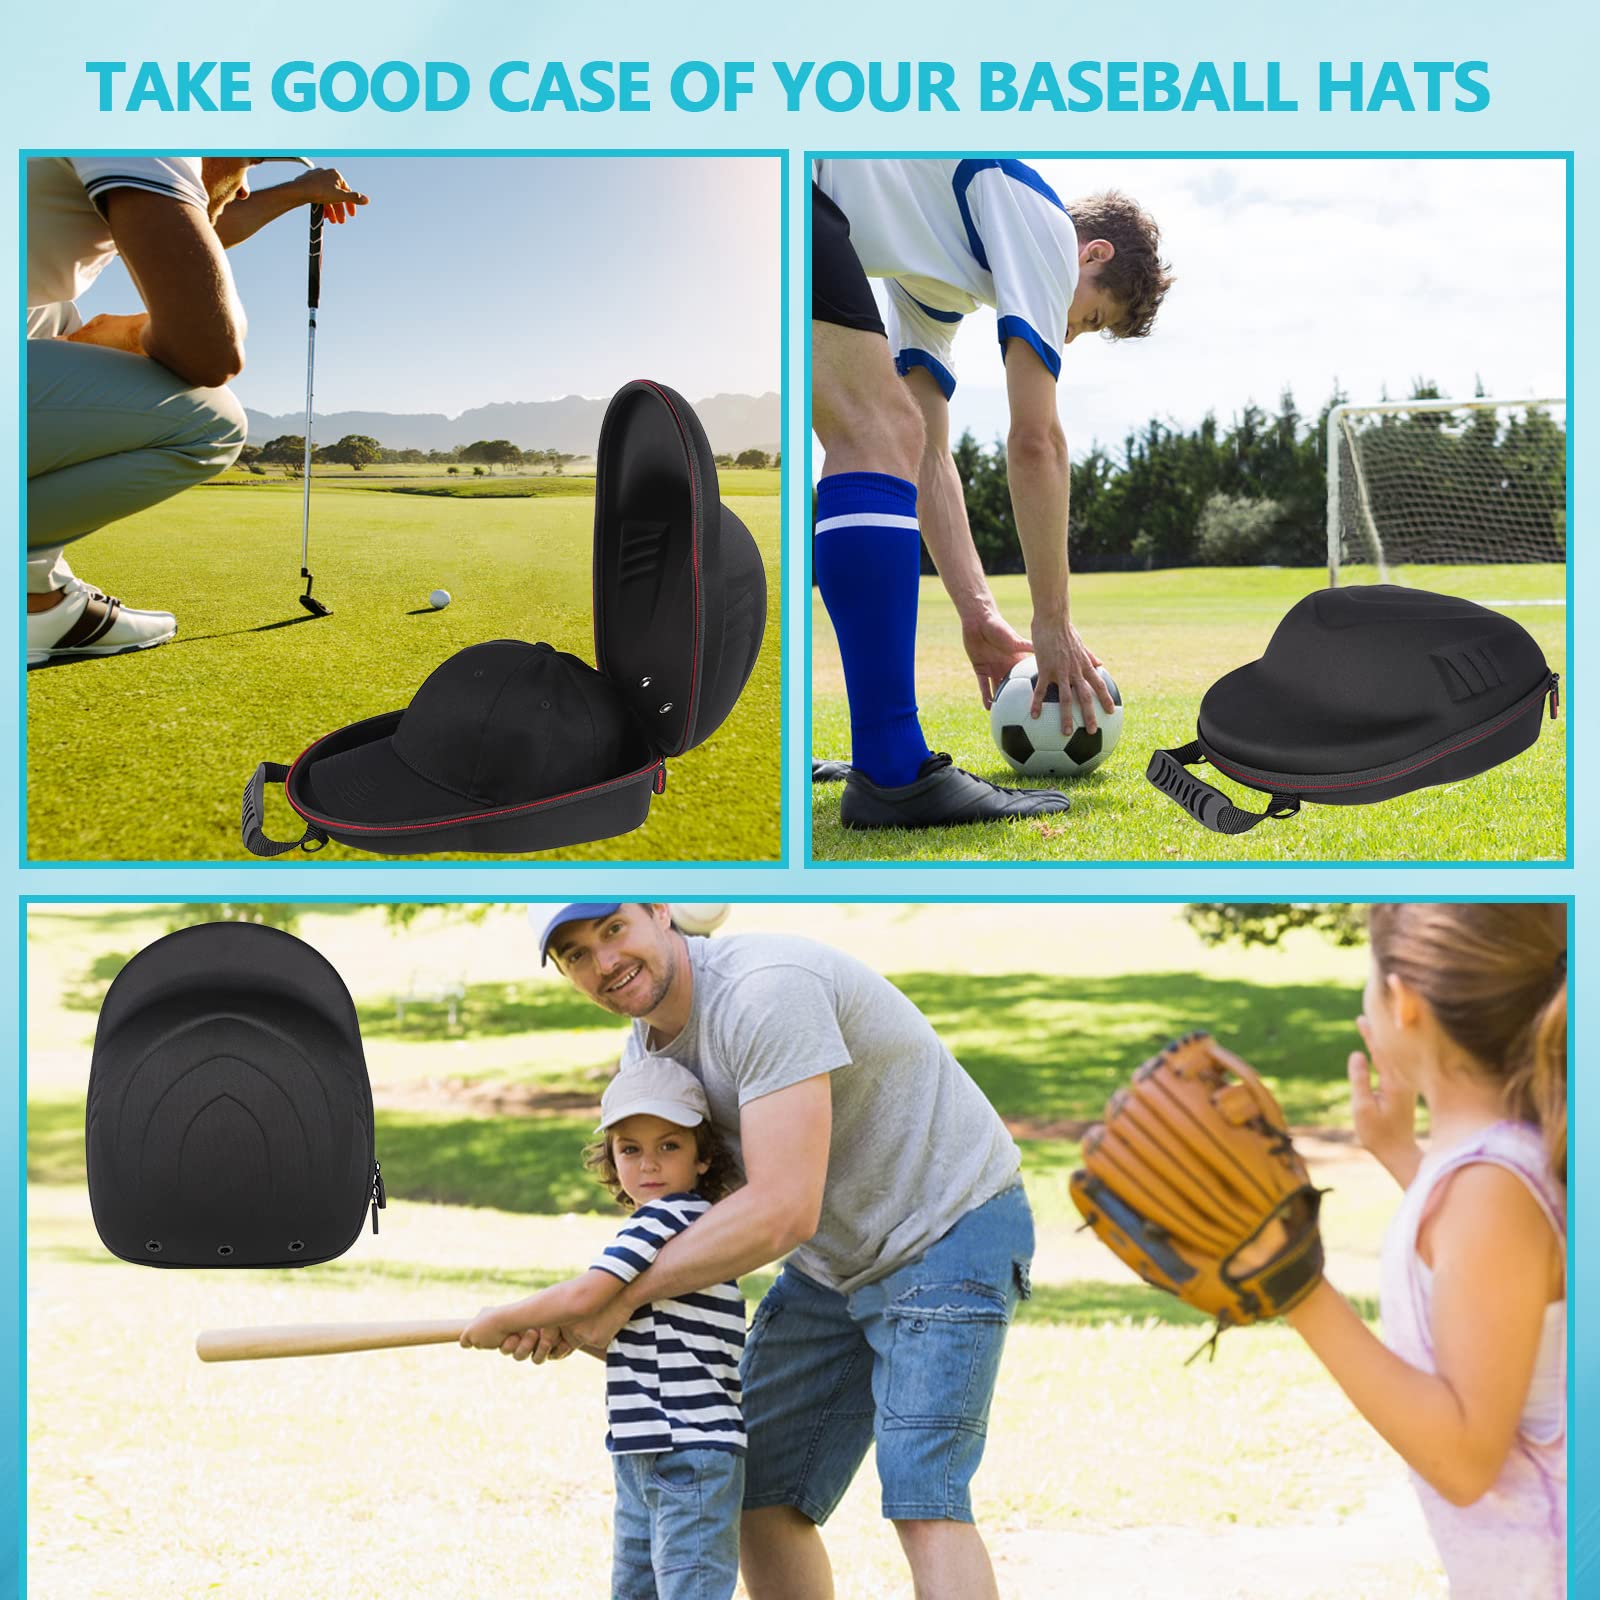 Glamgen Hard Hat Case for Baseball Caps,Hat Carrier Travel Case with One Black Baseball Cap and Adjustable Shoulder Strap,Hat Organizer Holder Bag for 6 Baseball Caps